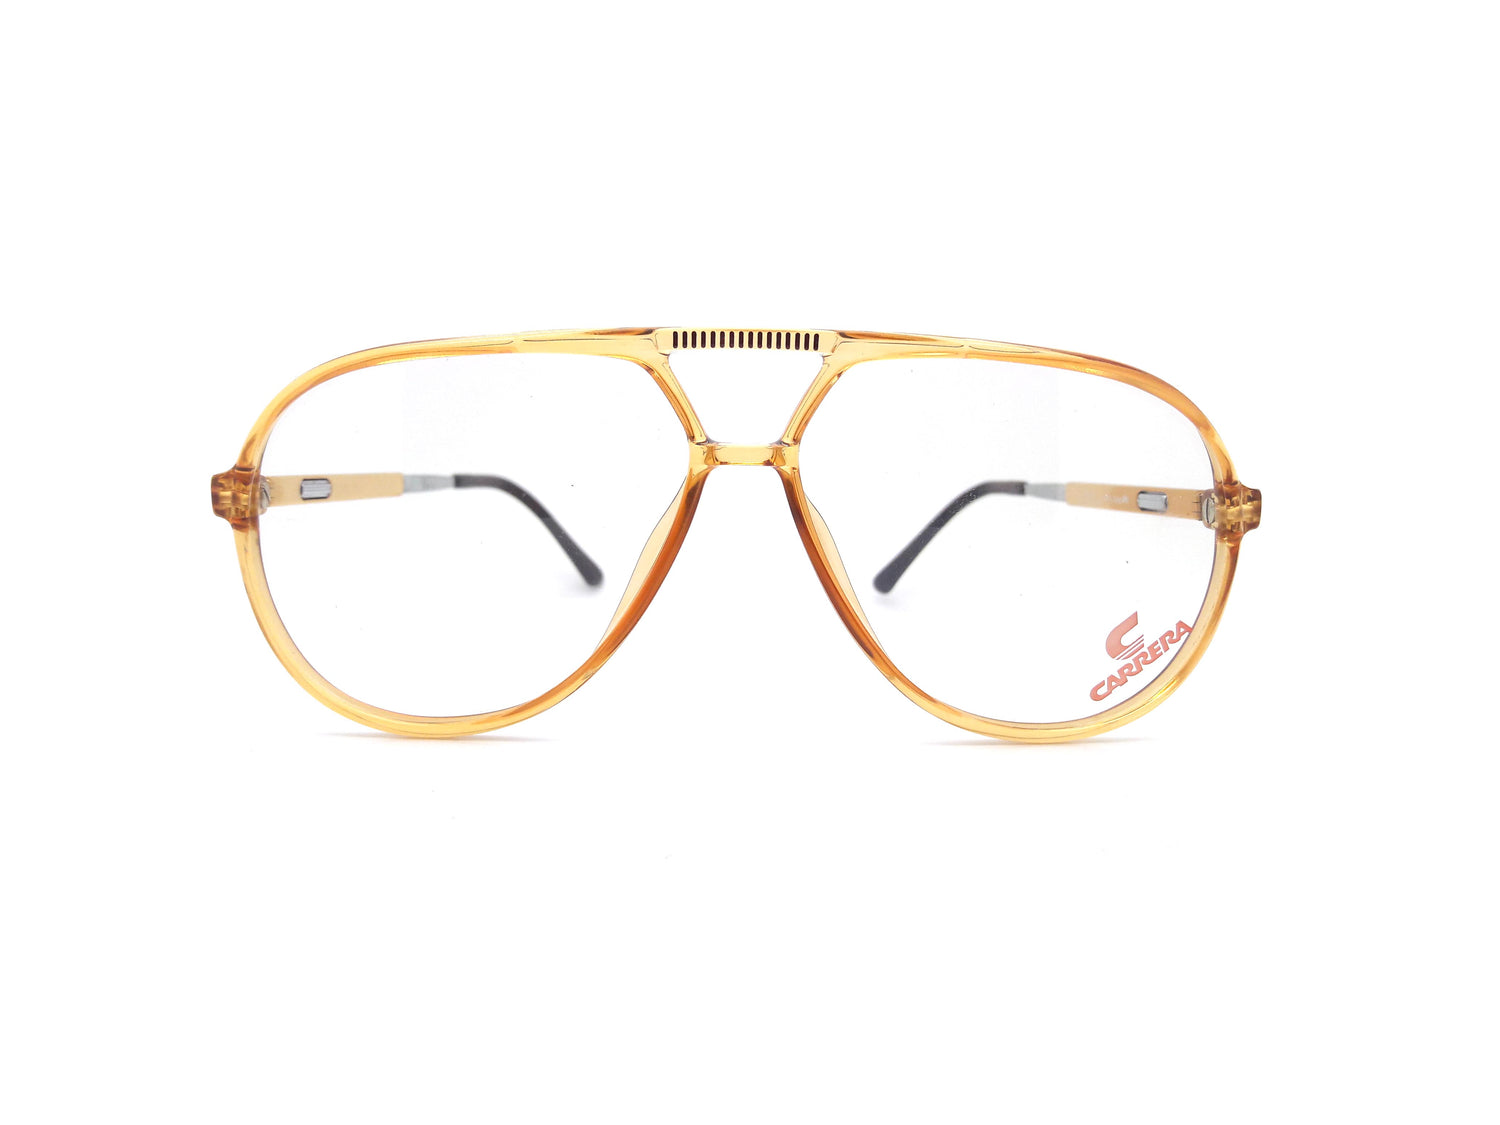 Carrera 5335 10 Vintage Glasses with Vario Arms – Ed & Sarna Vintage Eyewear